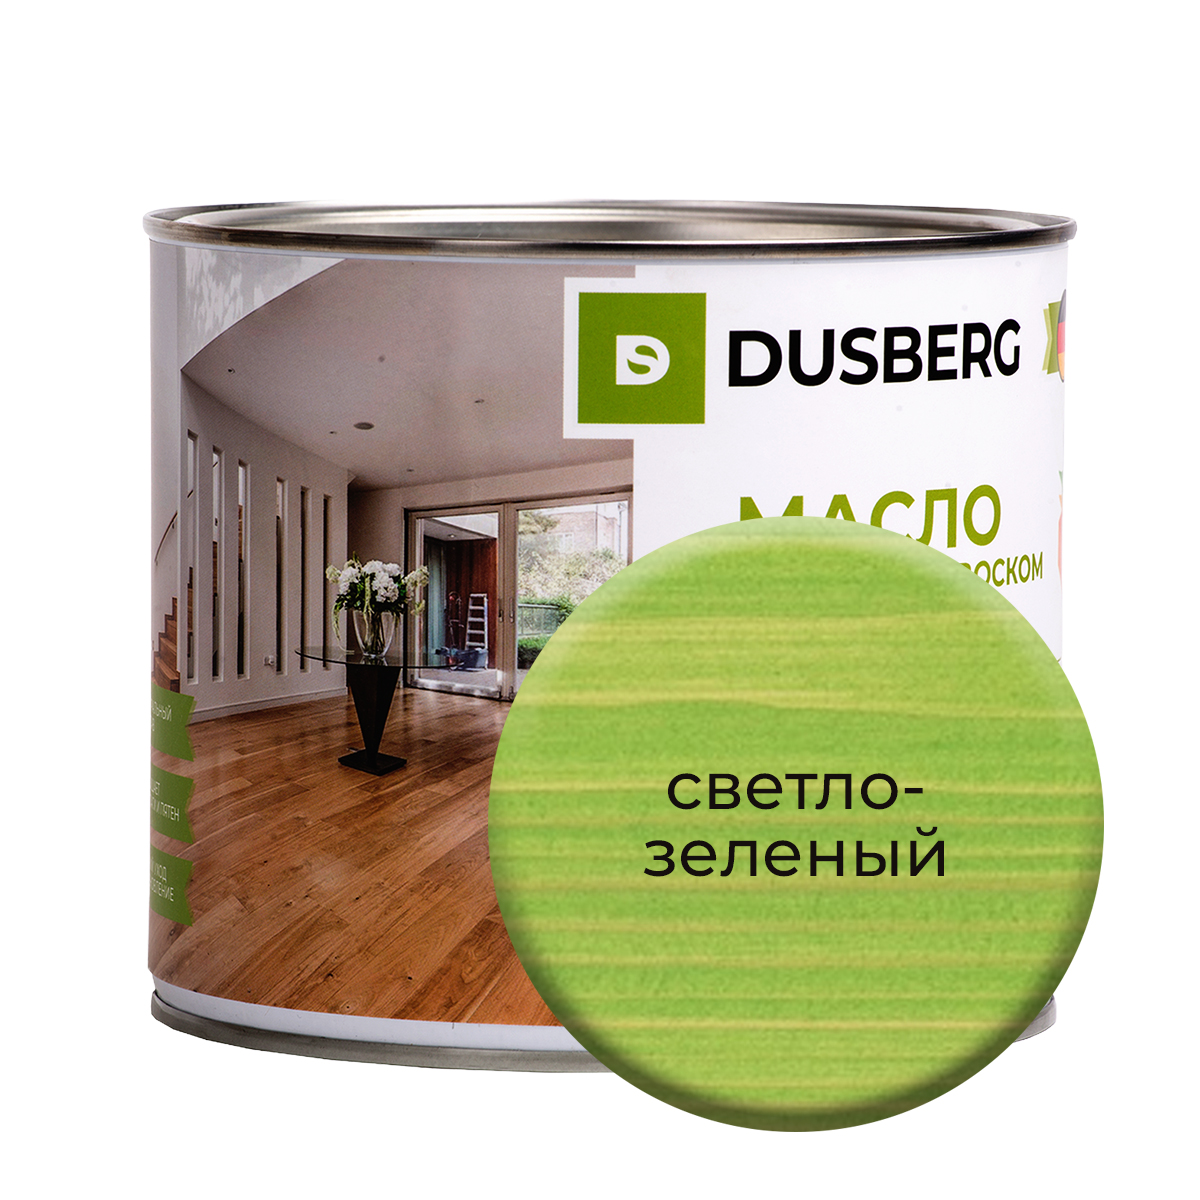 масло dusberg с твердым воском на бес ной основе 2 л светло зеленый Масло Dusberg с твердым воском на бесцветной основе, 2 л Светло-зеленый